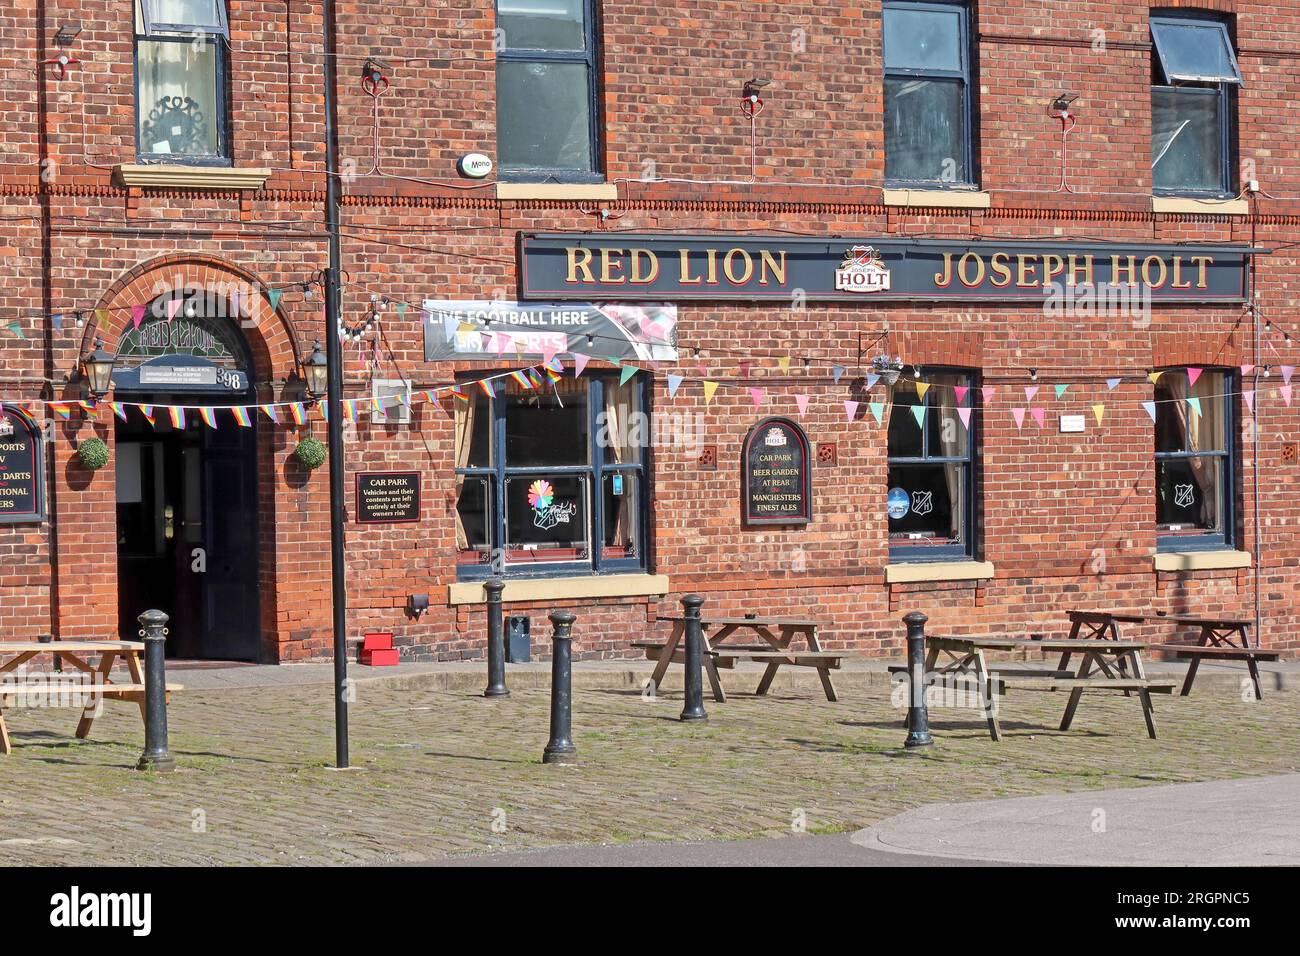 The Red Lion Joseph Holt pub, scène de la chute Mark E Smith photoshoots, 398 Bury New Rd, Prestwich, Manchester, Angleterre, Royaume-Uni, M25 1AR Banque D'Images